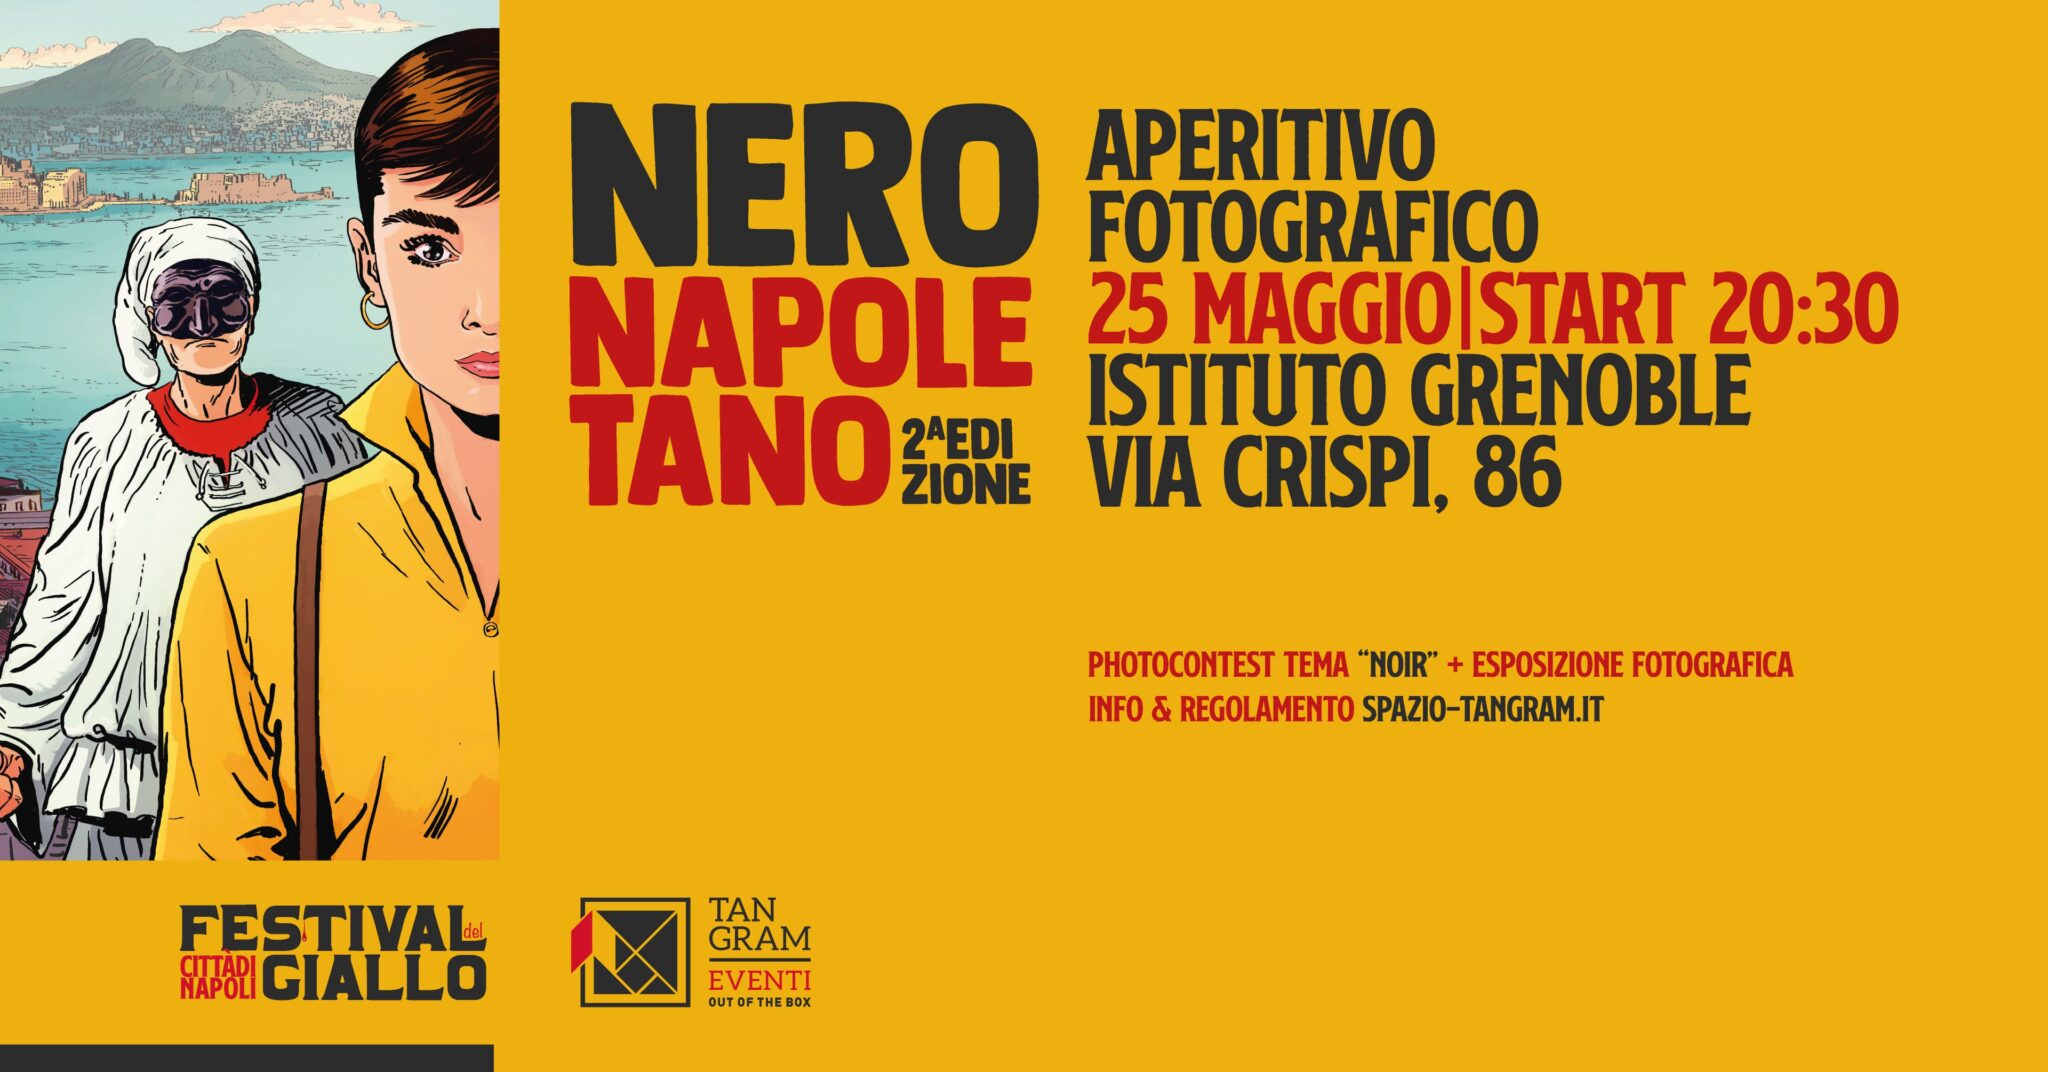 Nero Napoletano - aperitivo fotografico